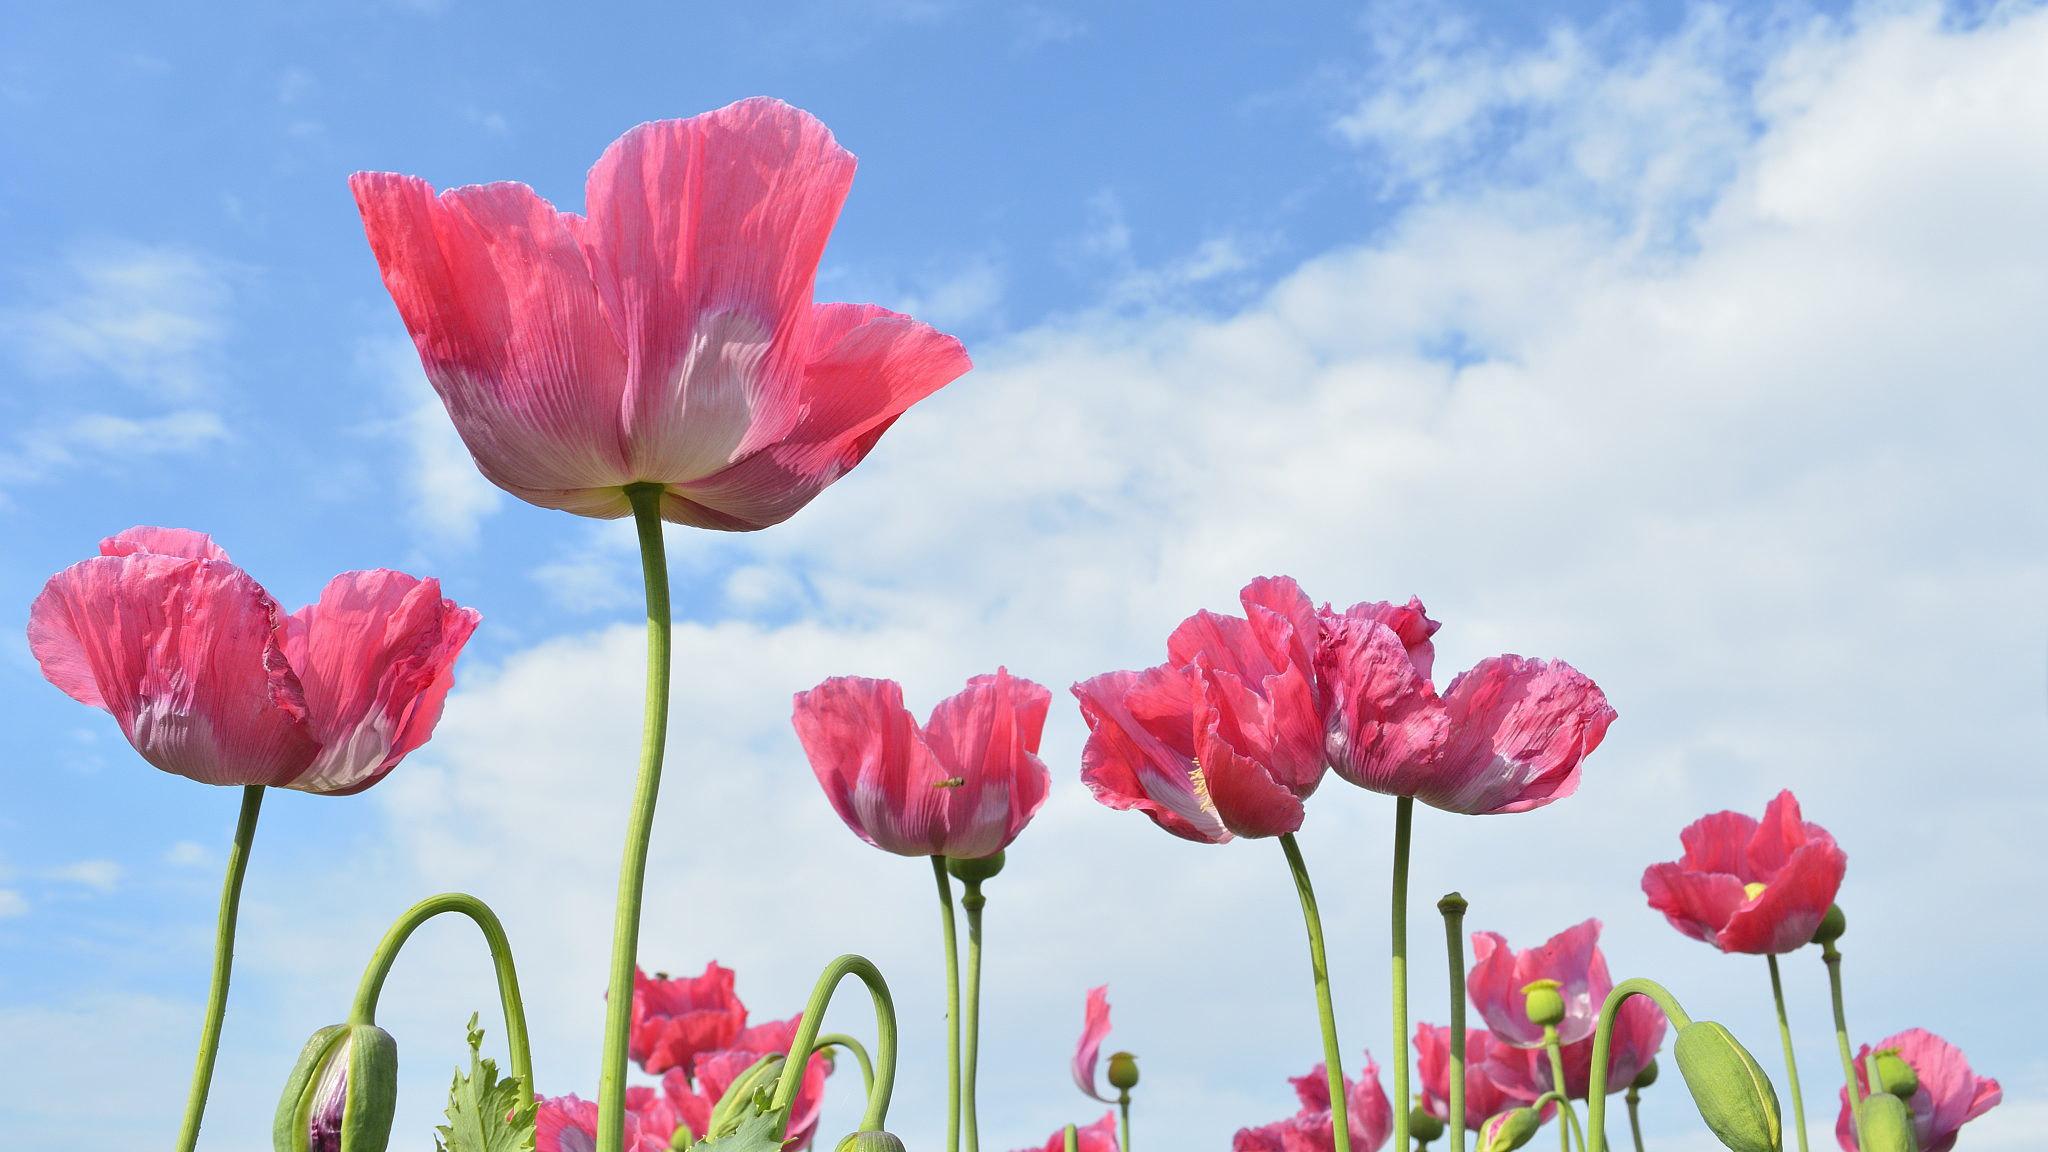 Opiates: The Poppy Flower's Secret